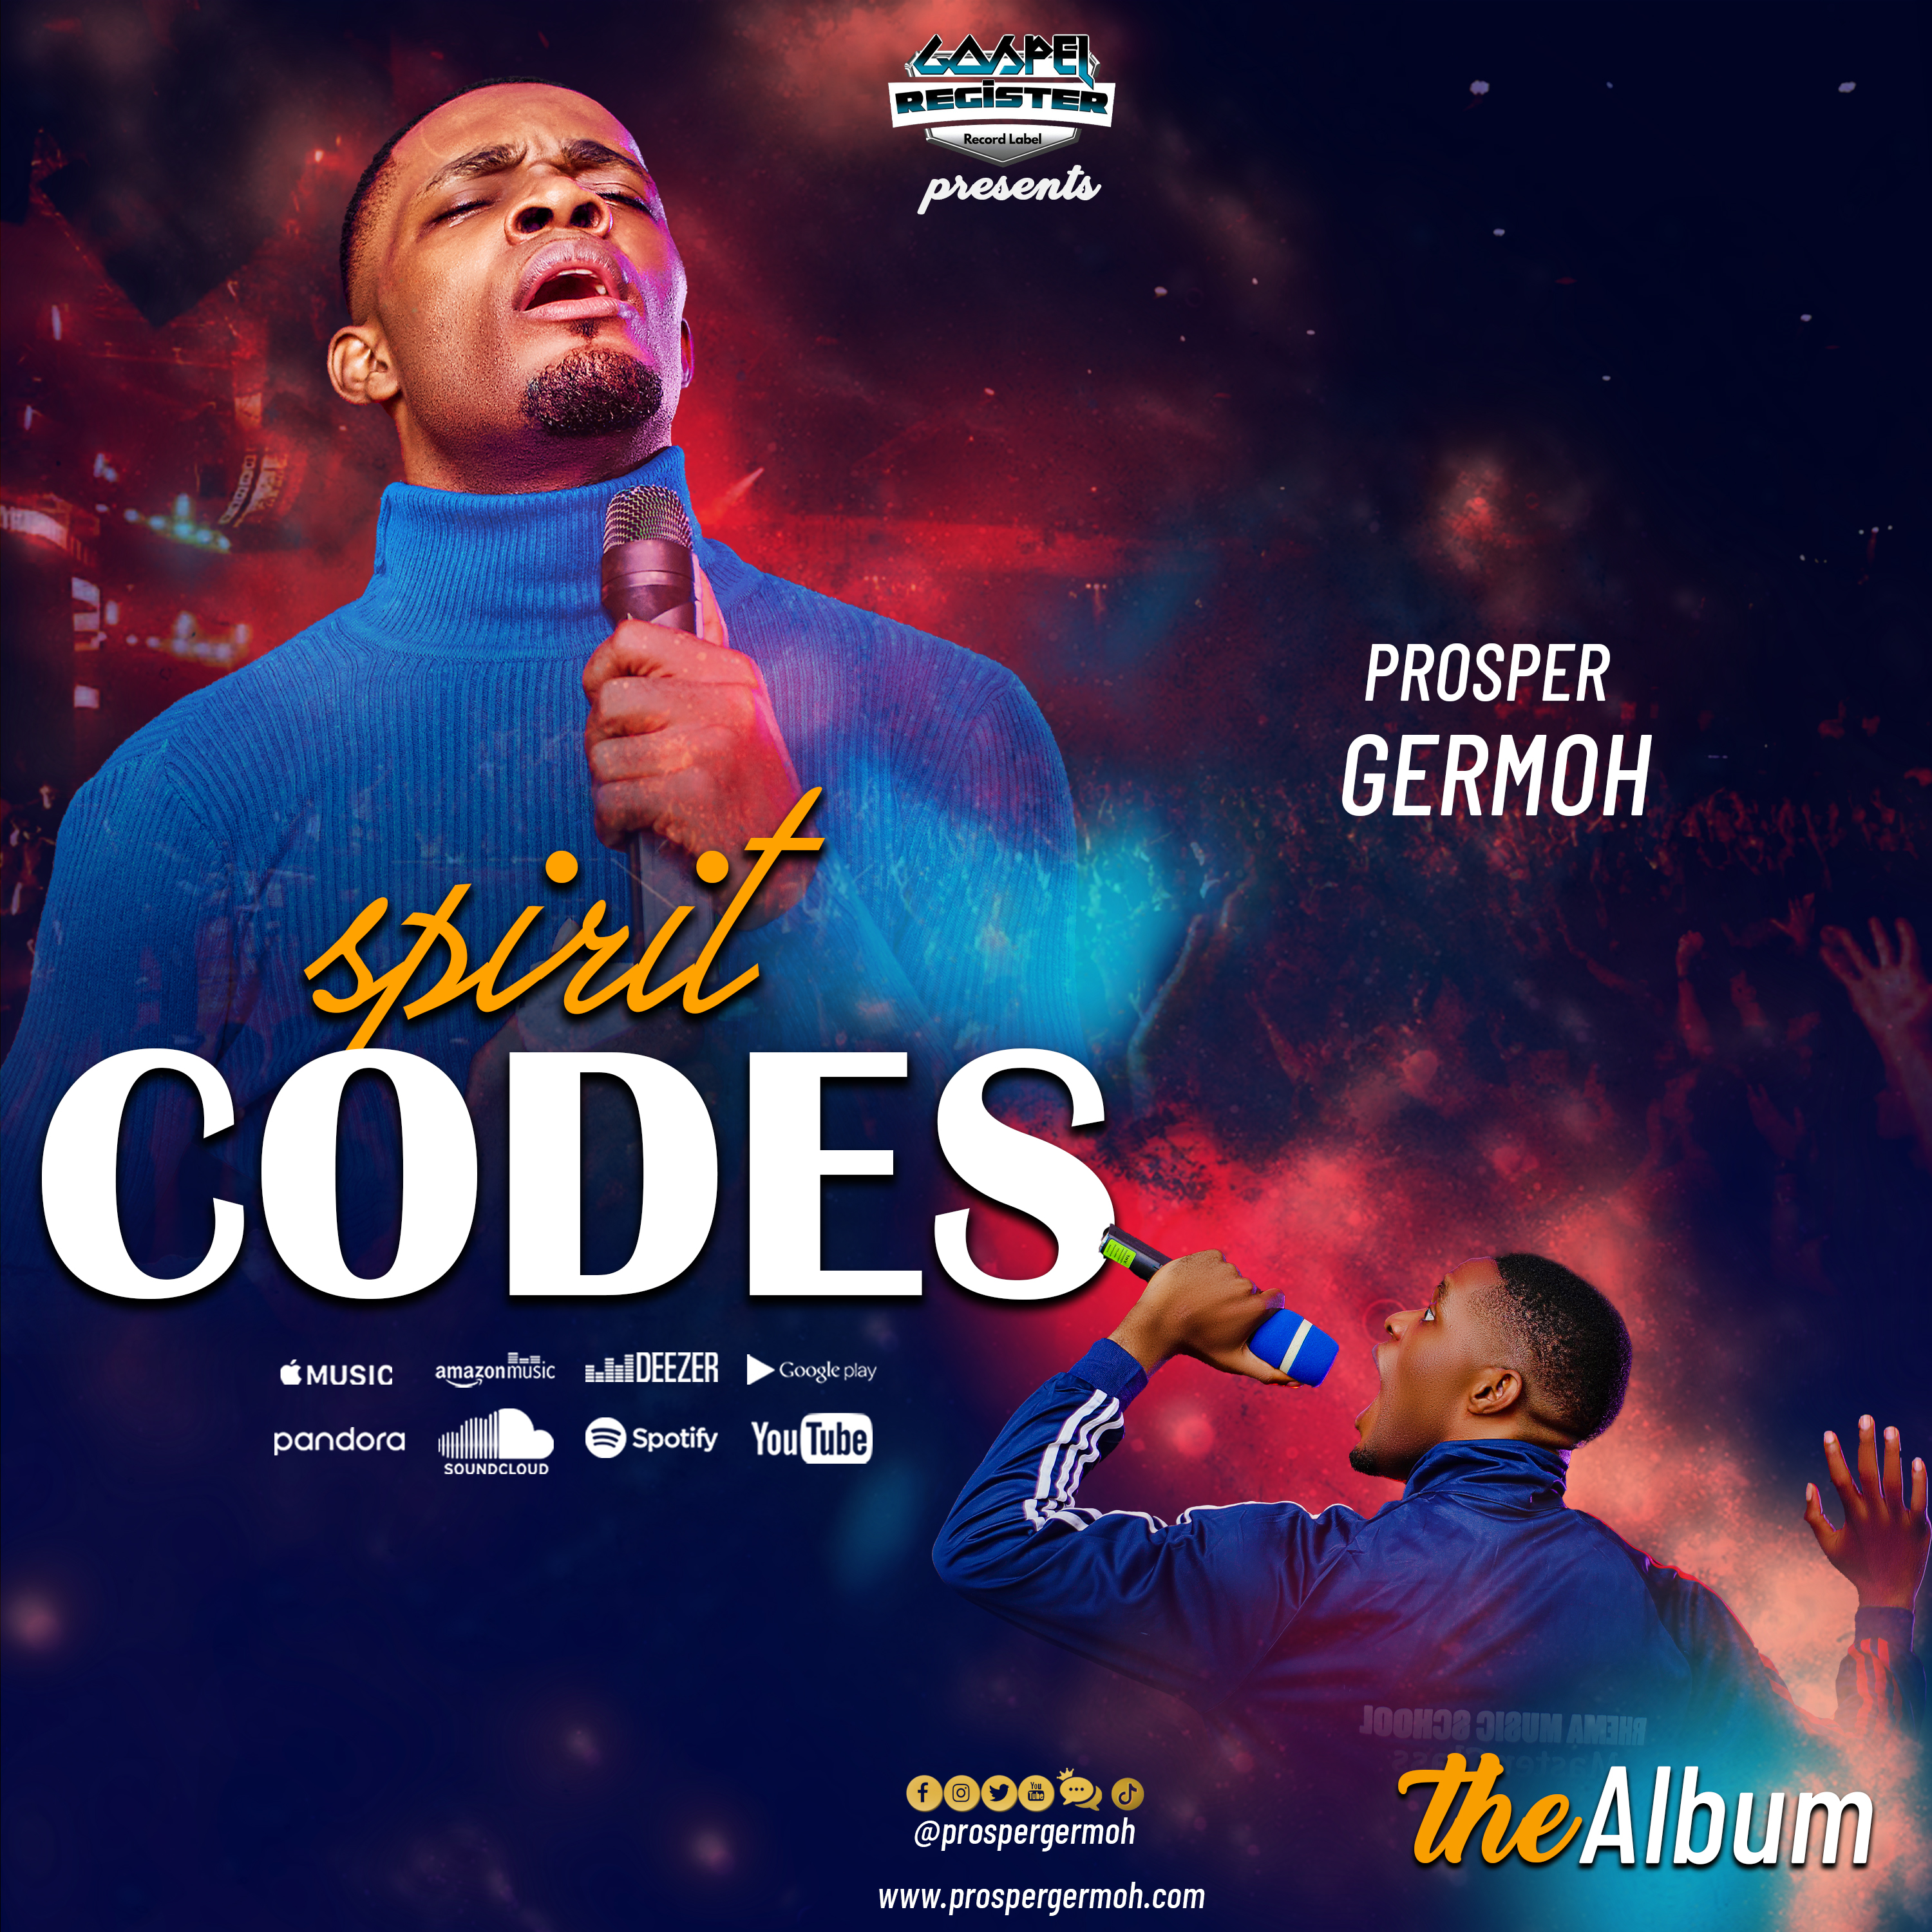 Spirit Codes by Prosper Germoh | Album